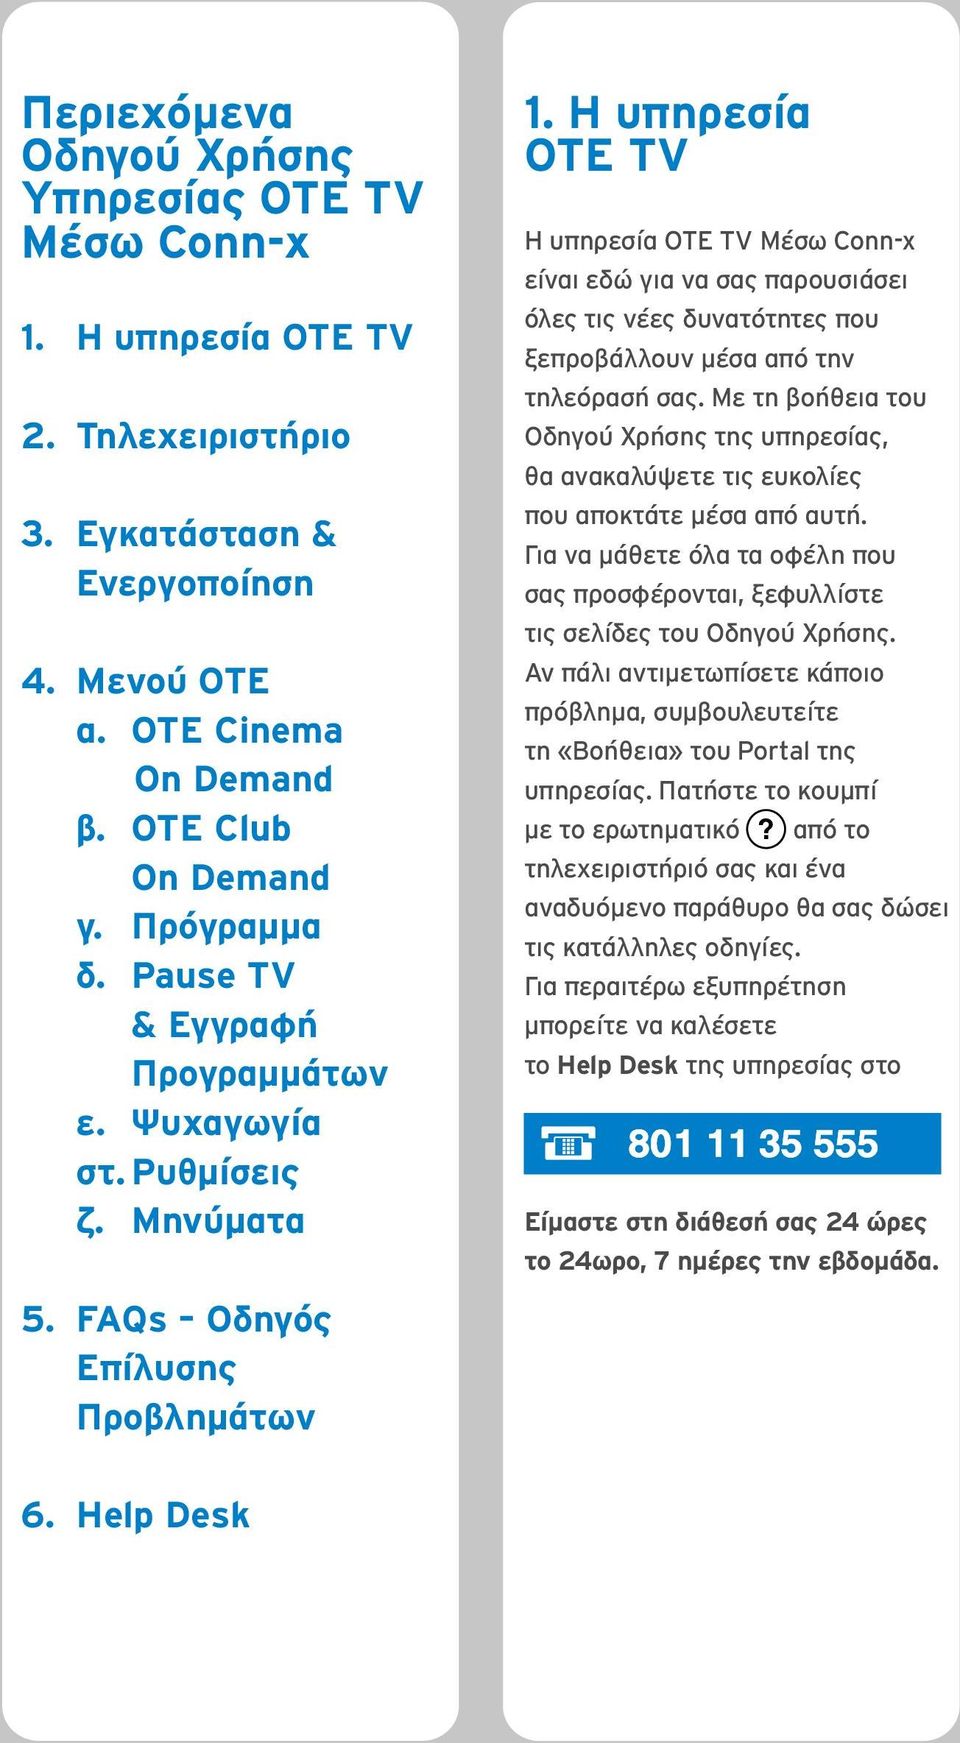 Η υπηρεσία ΟΤΕ TV Η υπηρεσία ΟΤΕ TV Μέσω Conn-x είναι εδώ για να σας παρουσιάσει όλες τις νέες δυνατότητες που ξεπροβάλλουν μέσα από την τηλεόρασή σας.